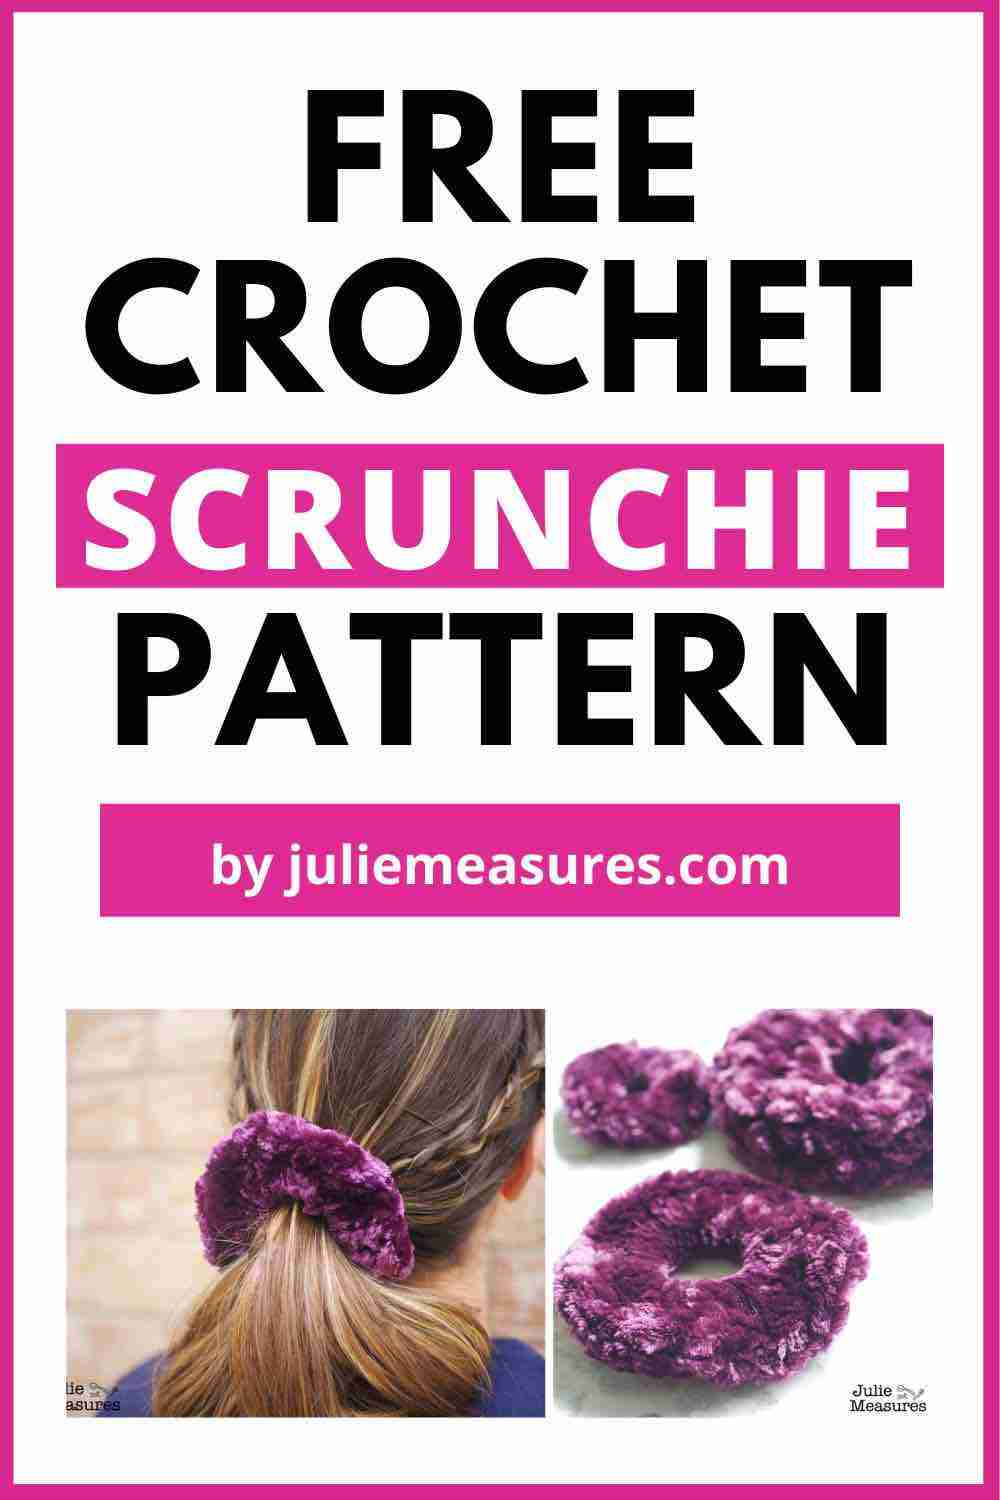 Crochet velvet scrunchie pattern - julie measures